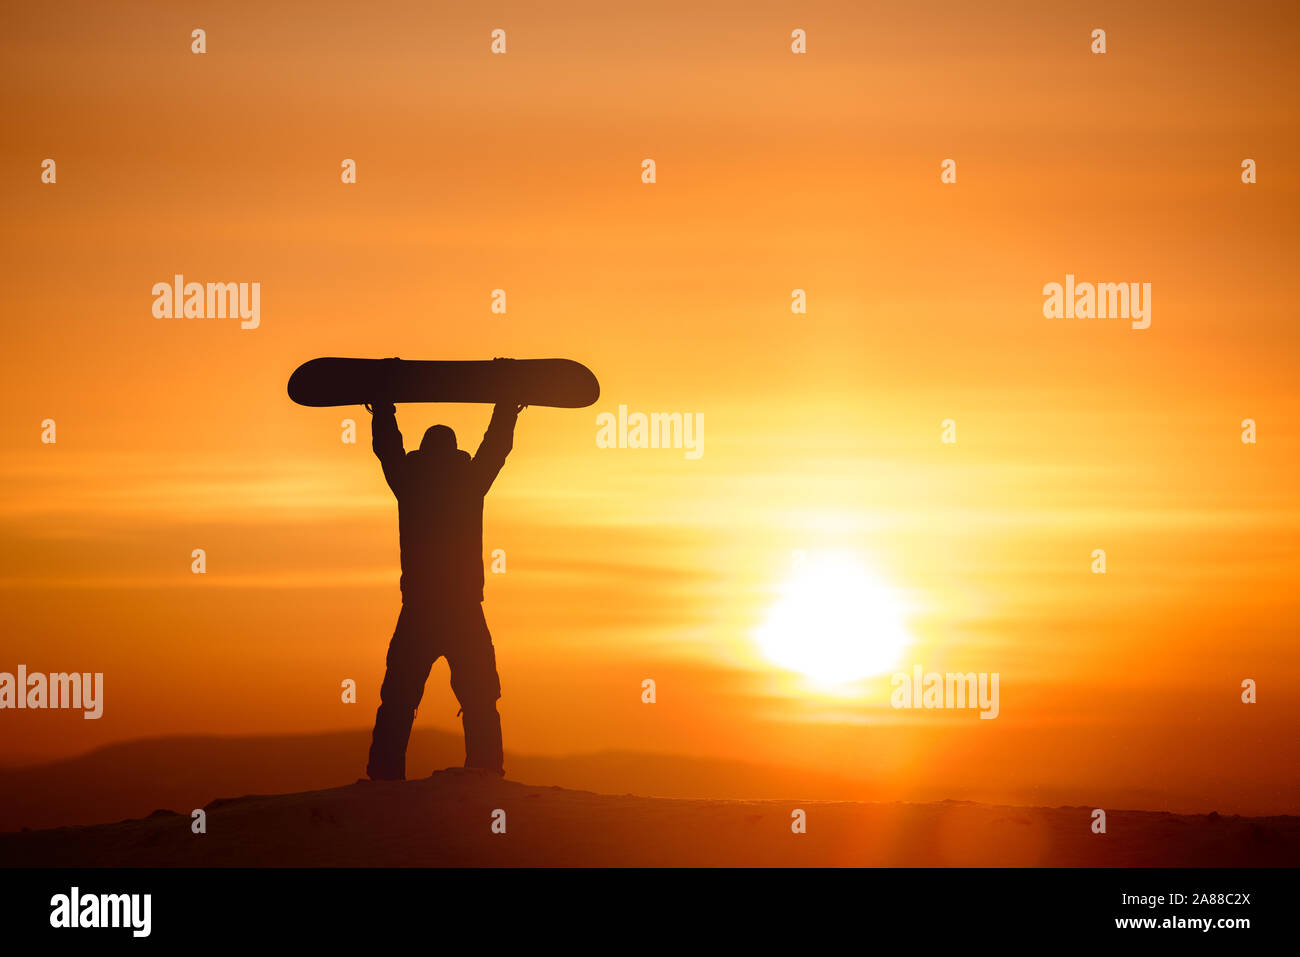 Planche de snowboard est au-dessus de la tête sur fond de coucher de soleil et ciel. Concept de ski Banque D'Images